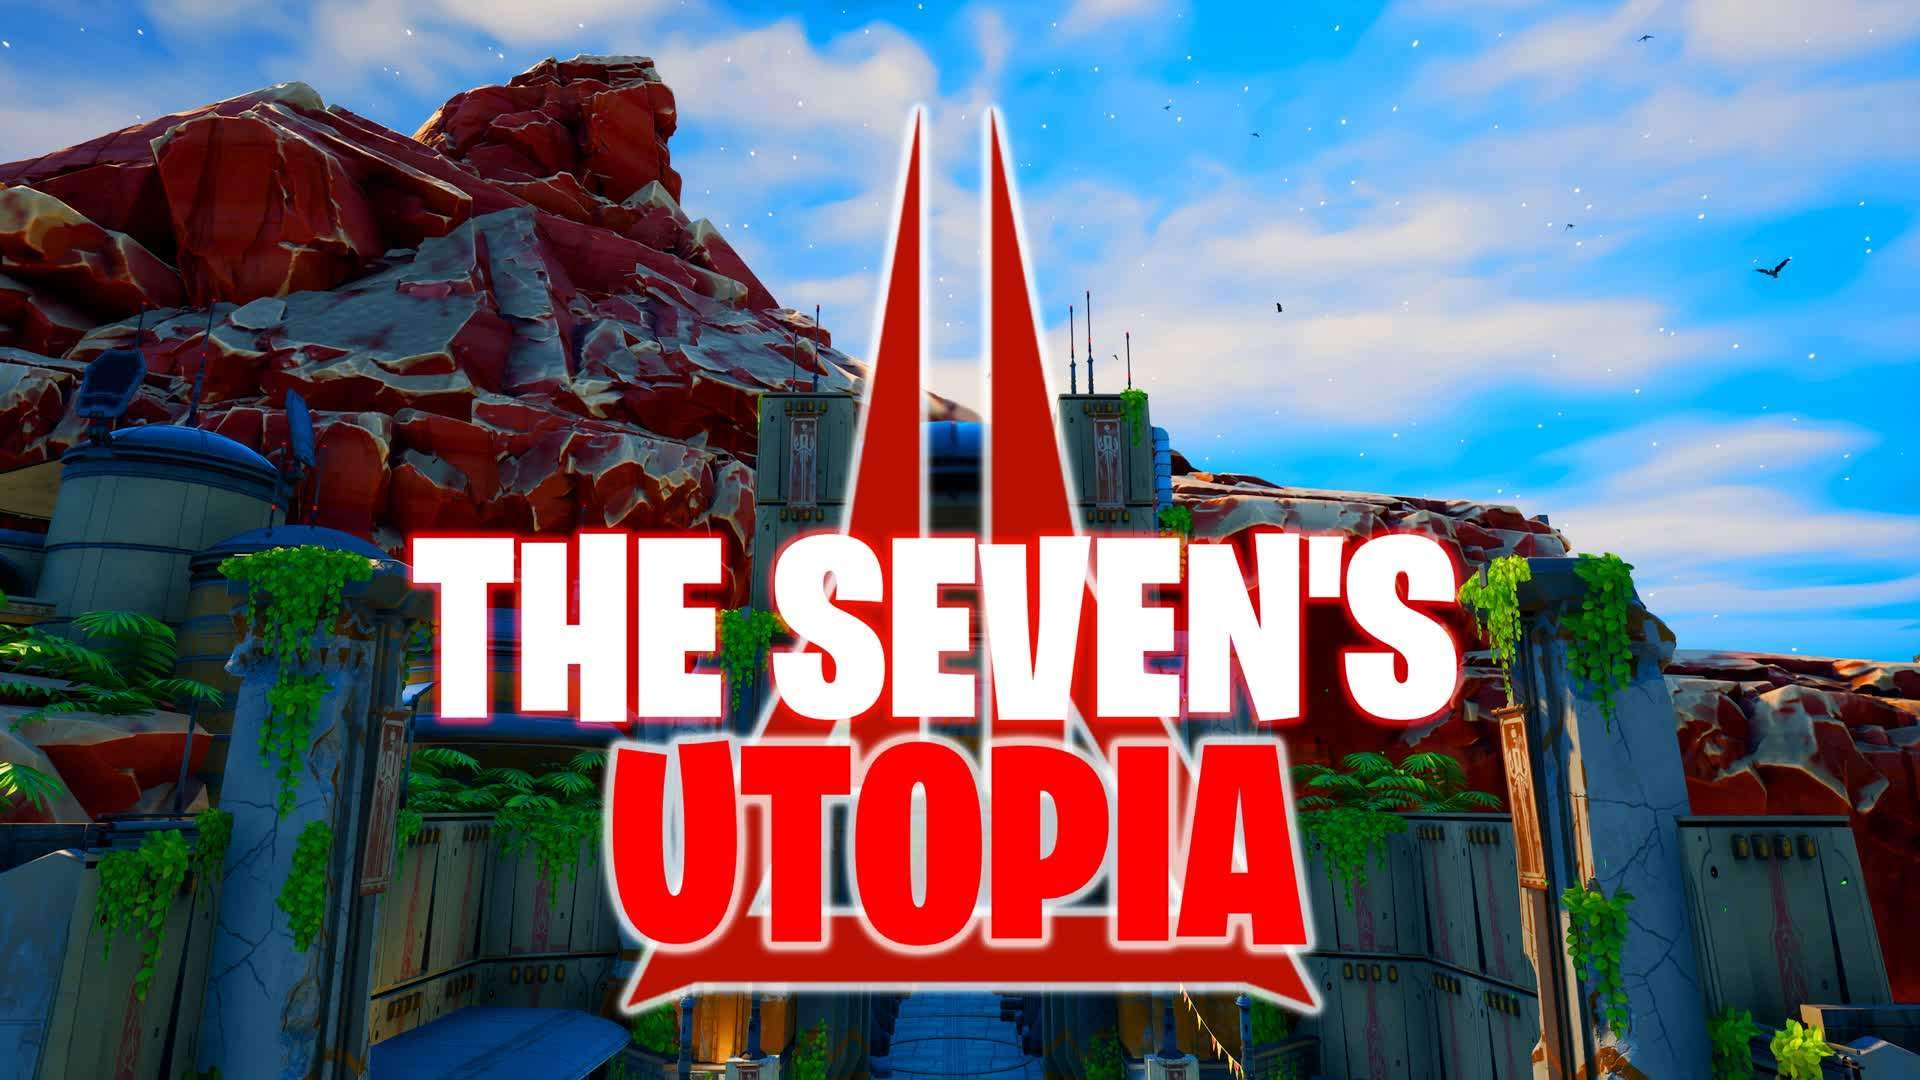 The Seven's Utopia